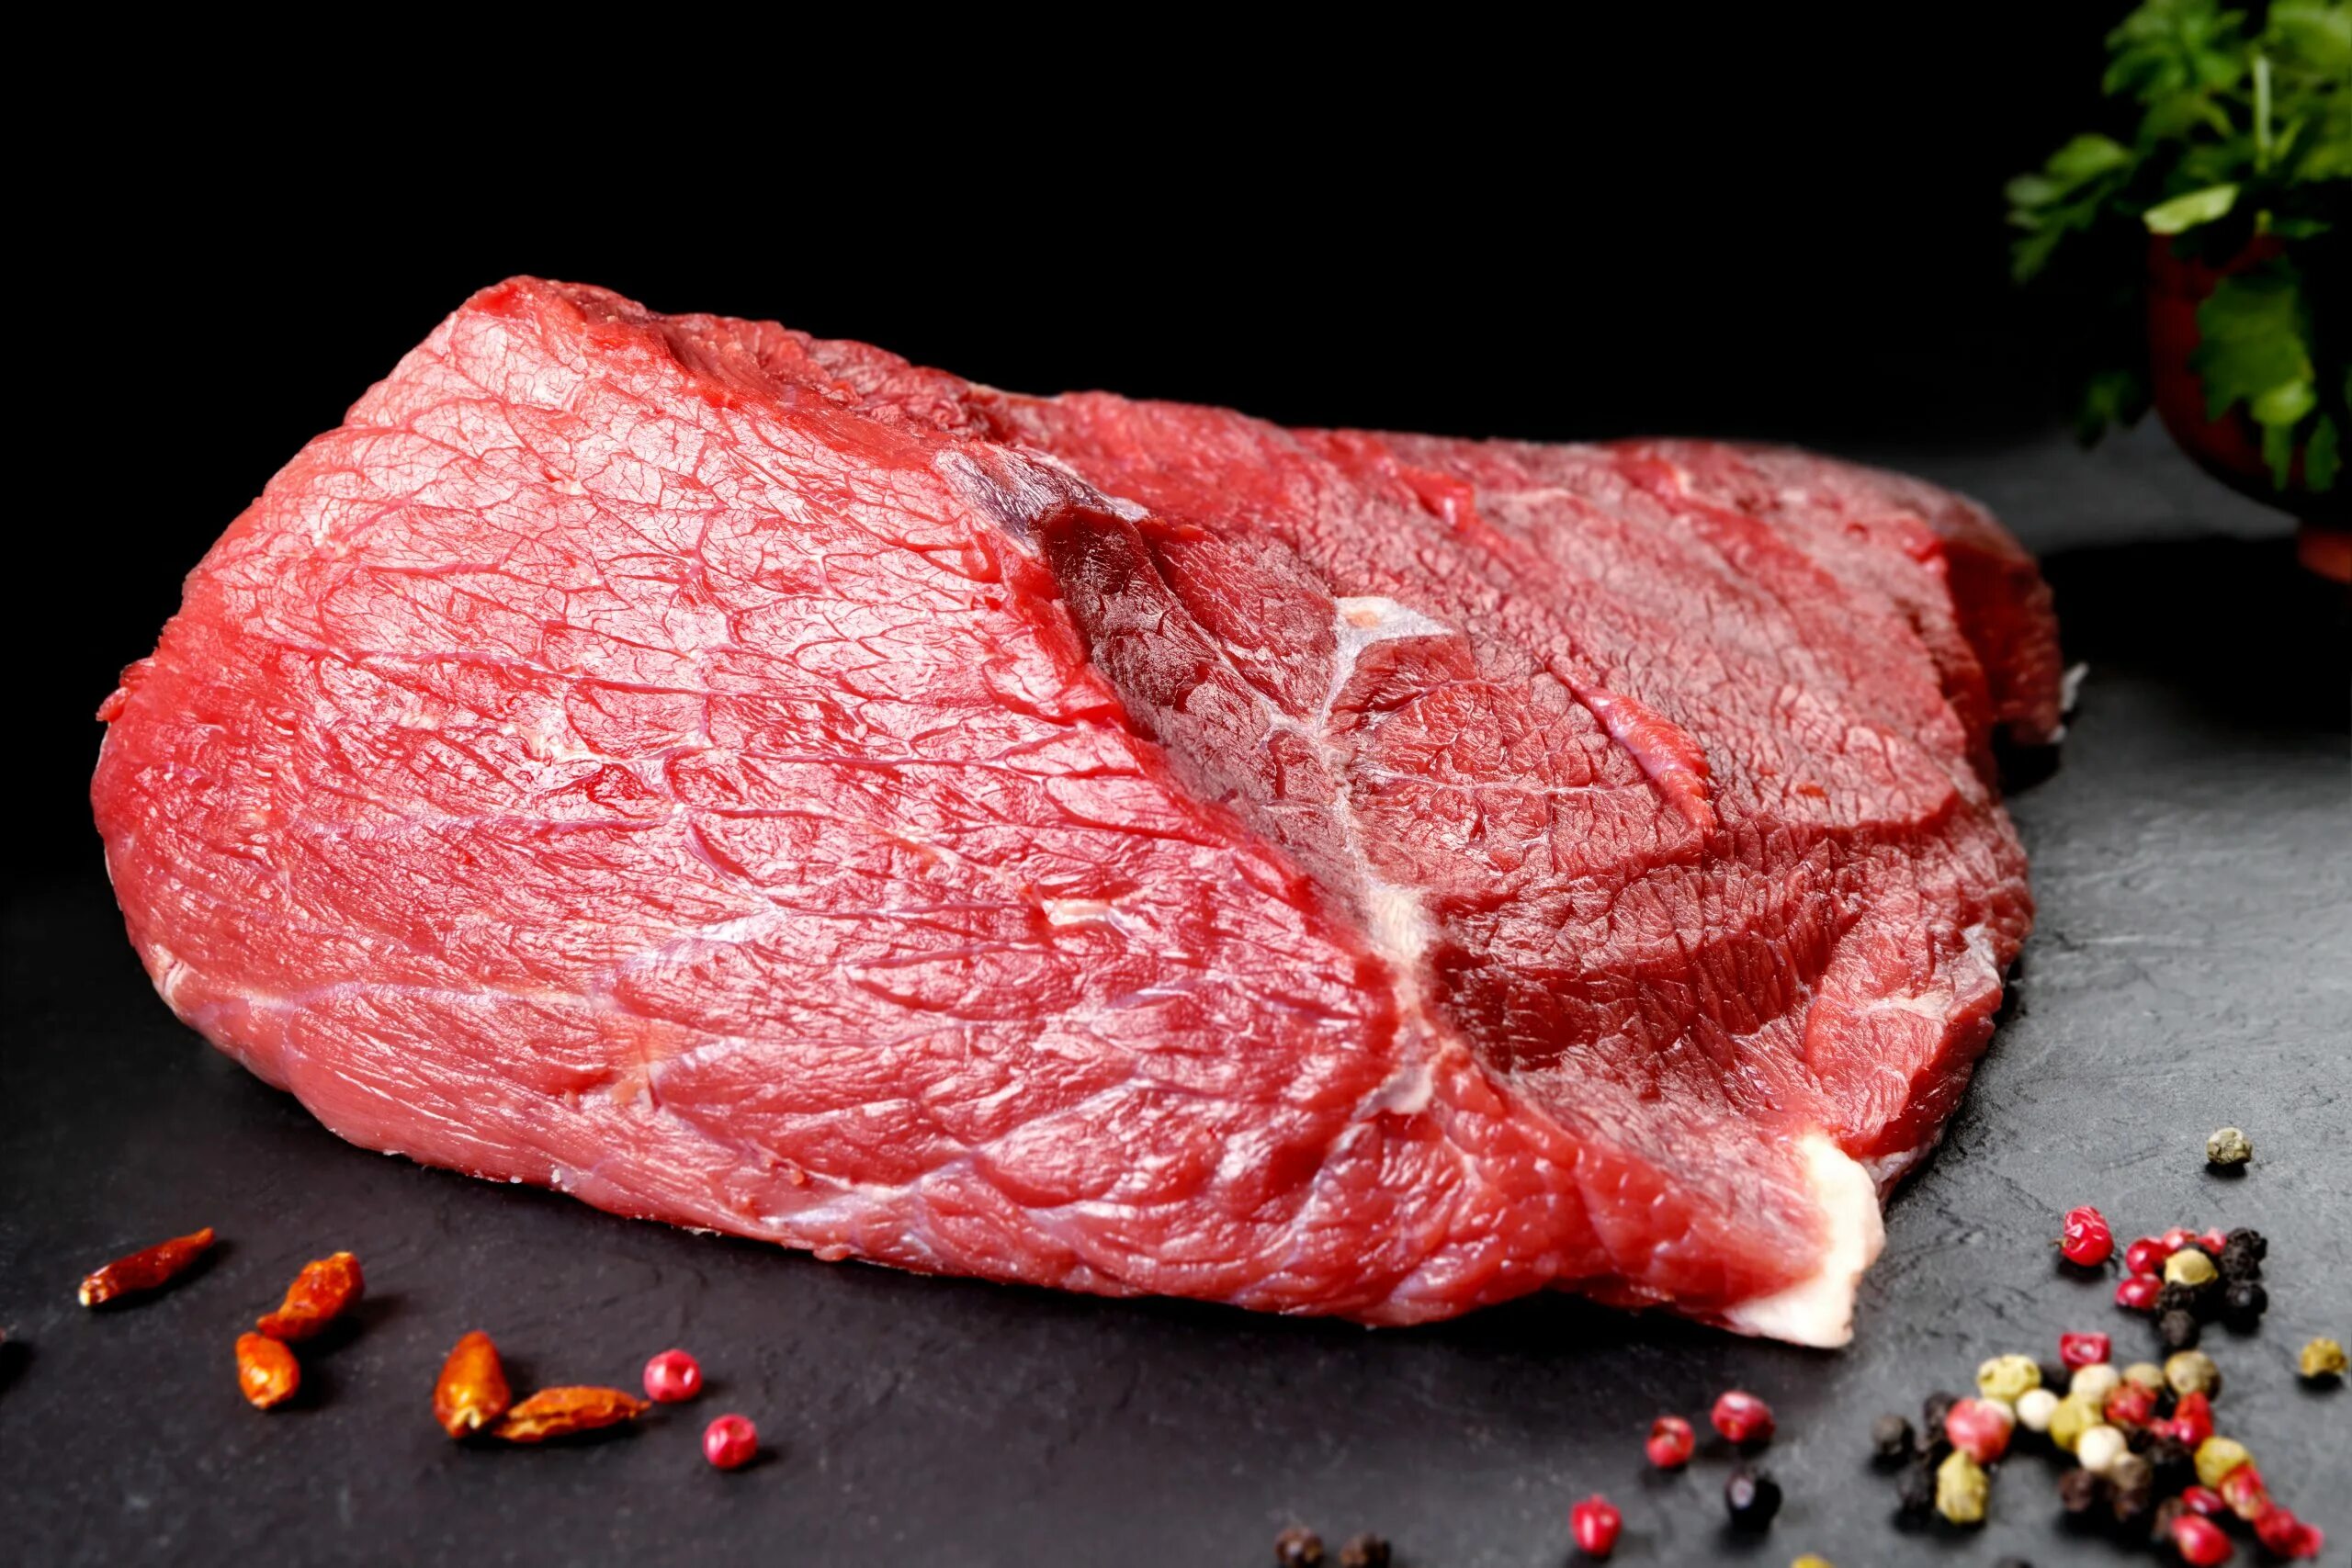 Кусок говядины на черном фоне. Мясо шея. Кусок красного мяса. Мясо говядины на черном фоне. Сонник кровь мясо сырое